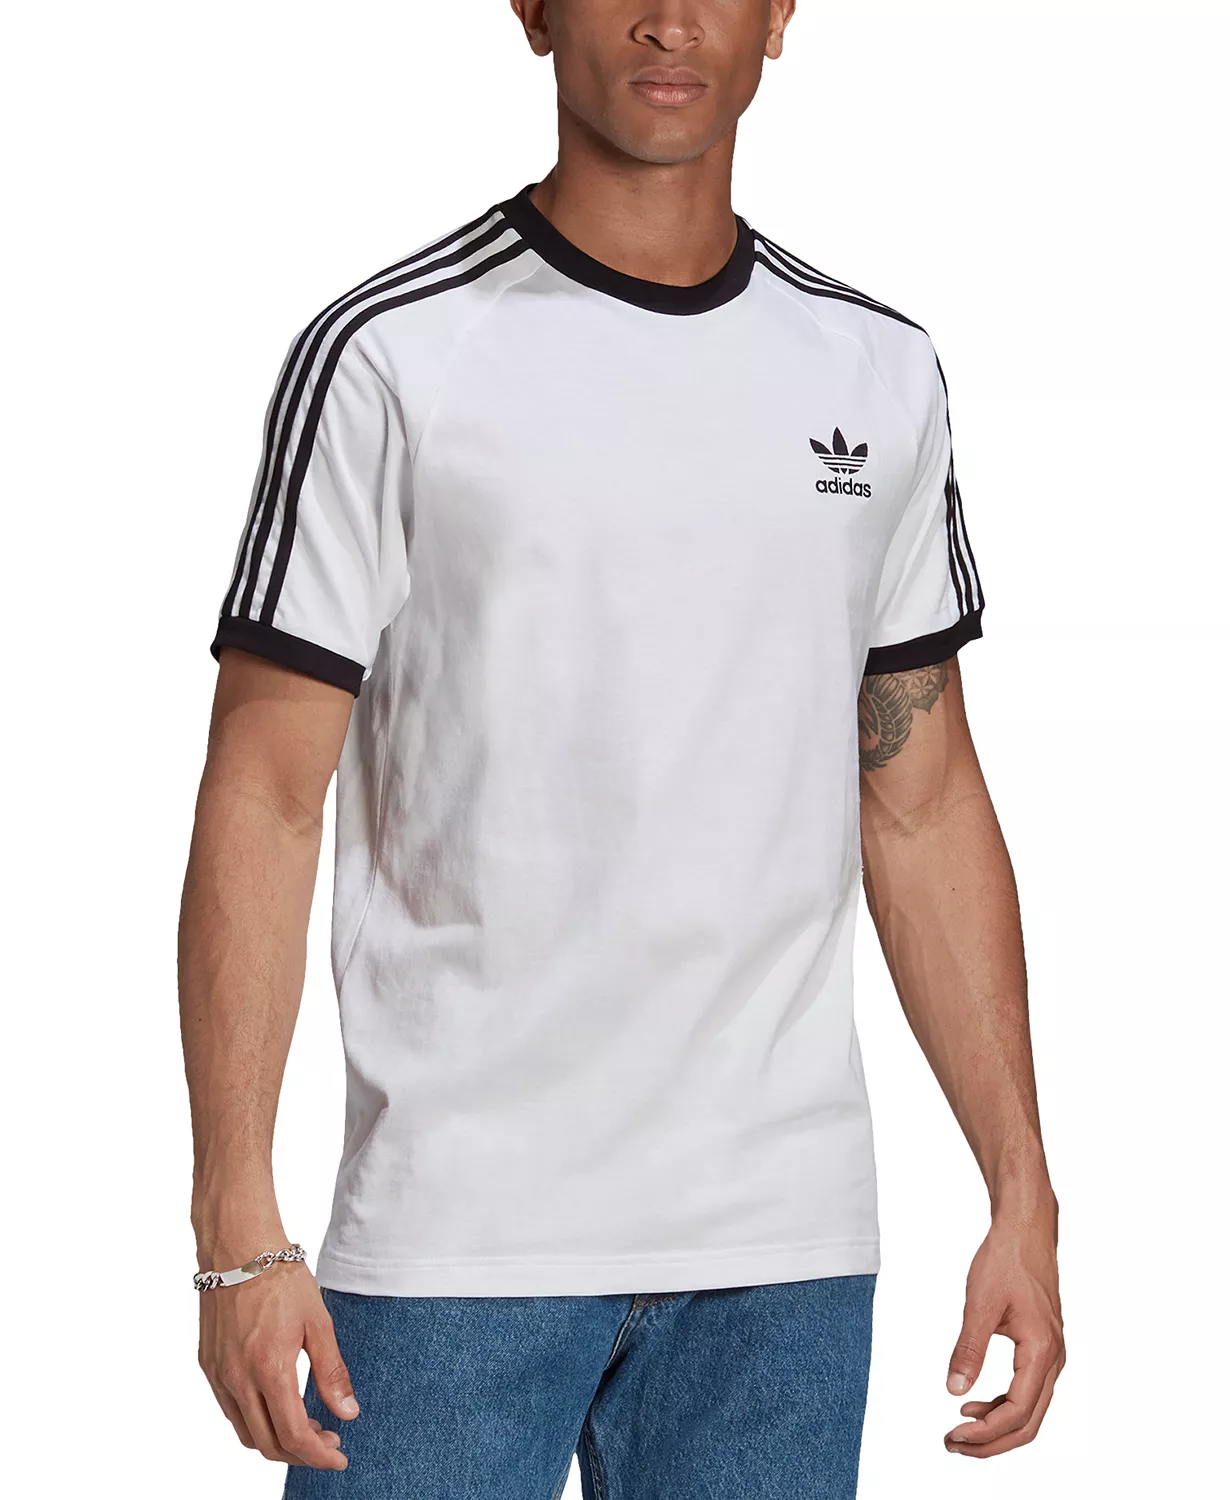 Adidas Originals 3-Stripes Cali T-Shirt